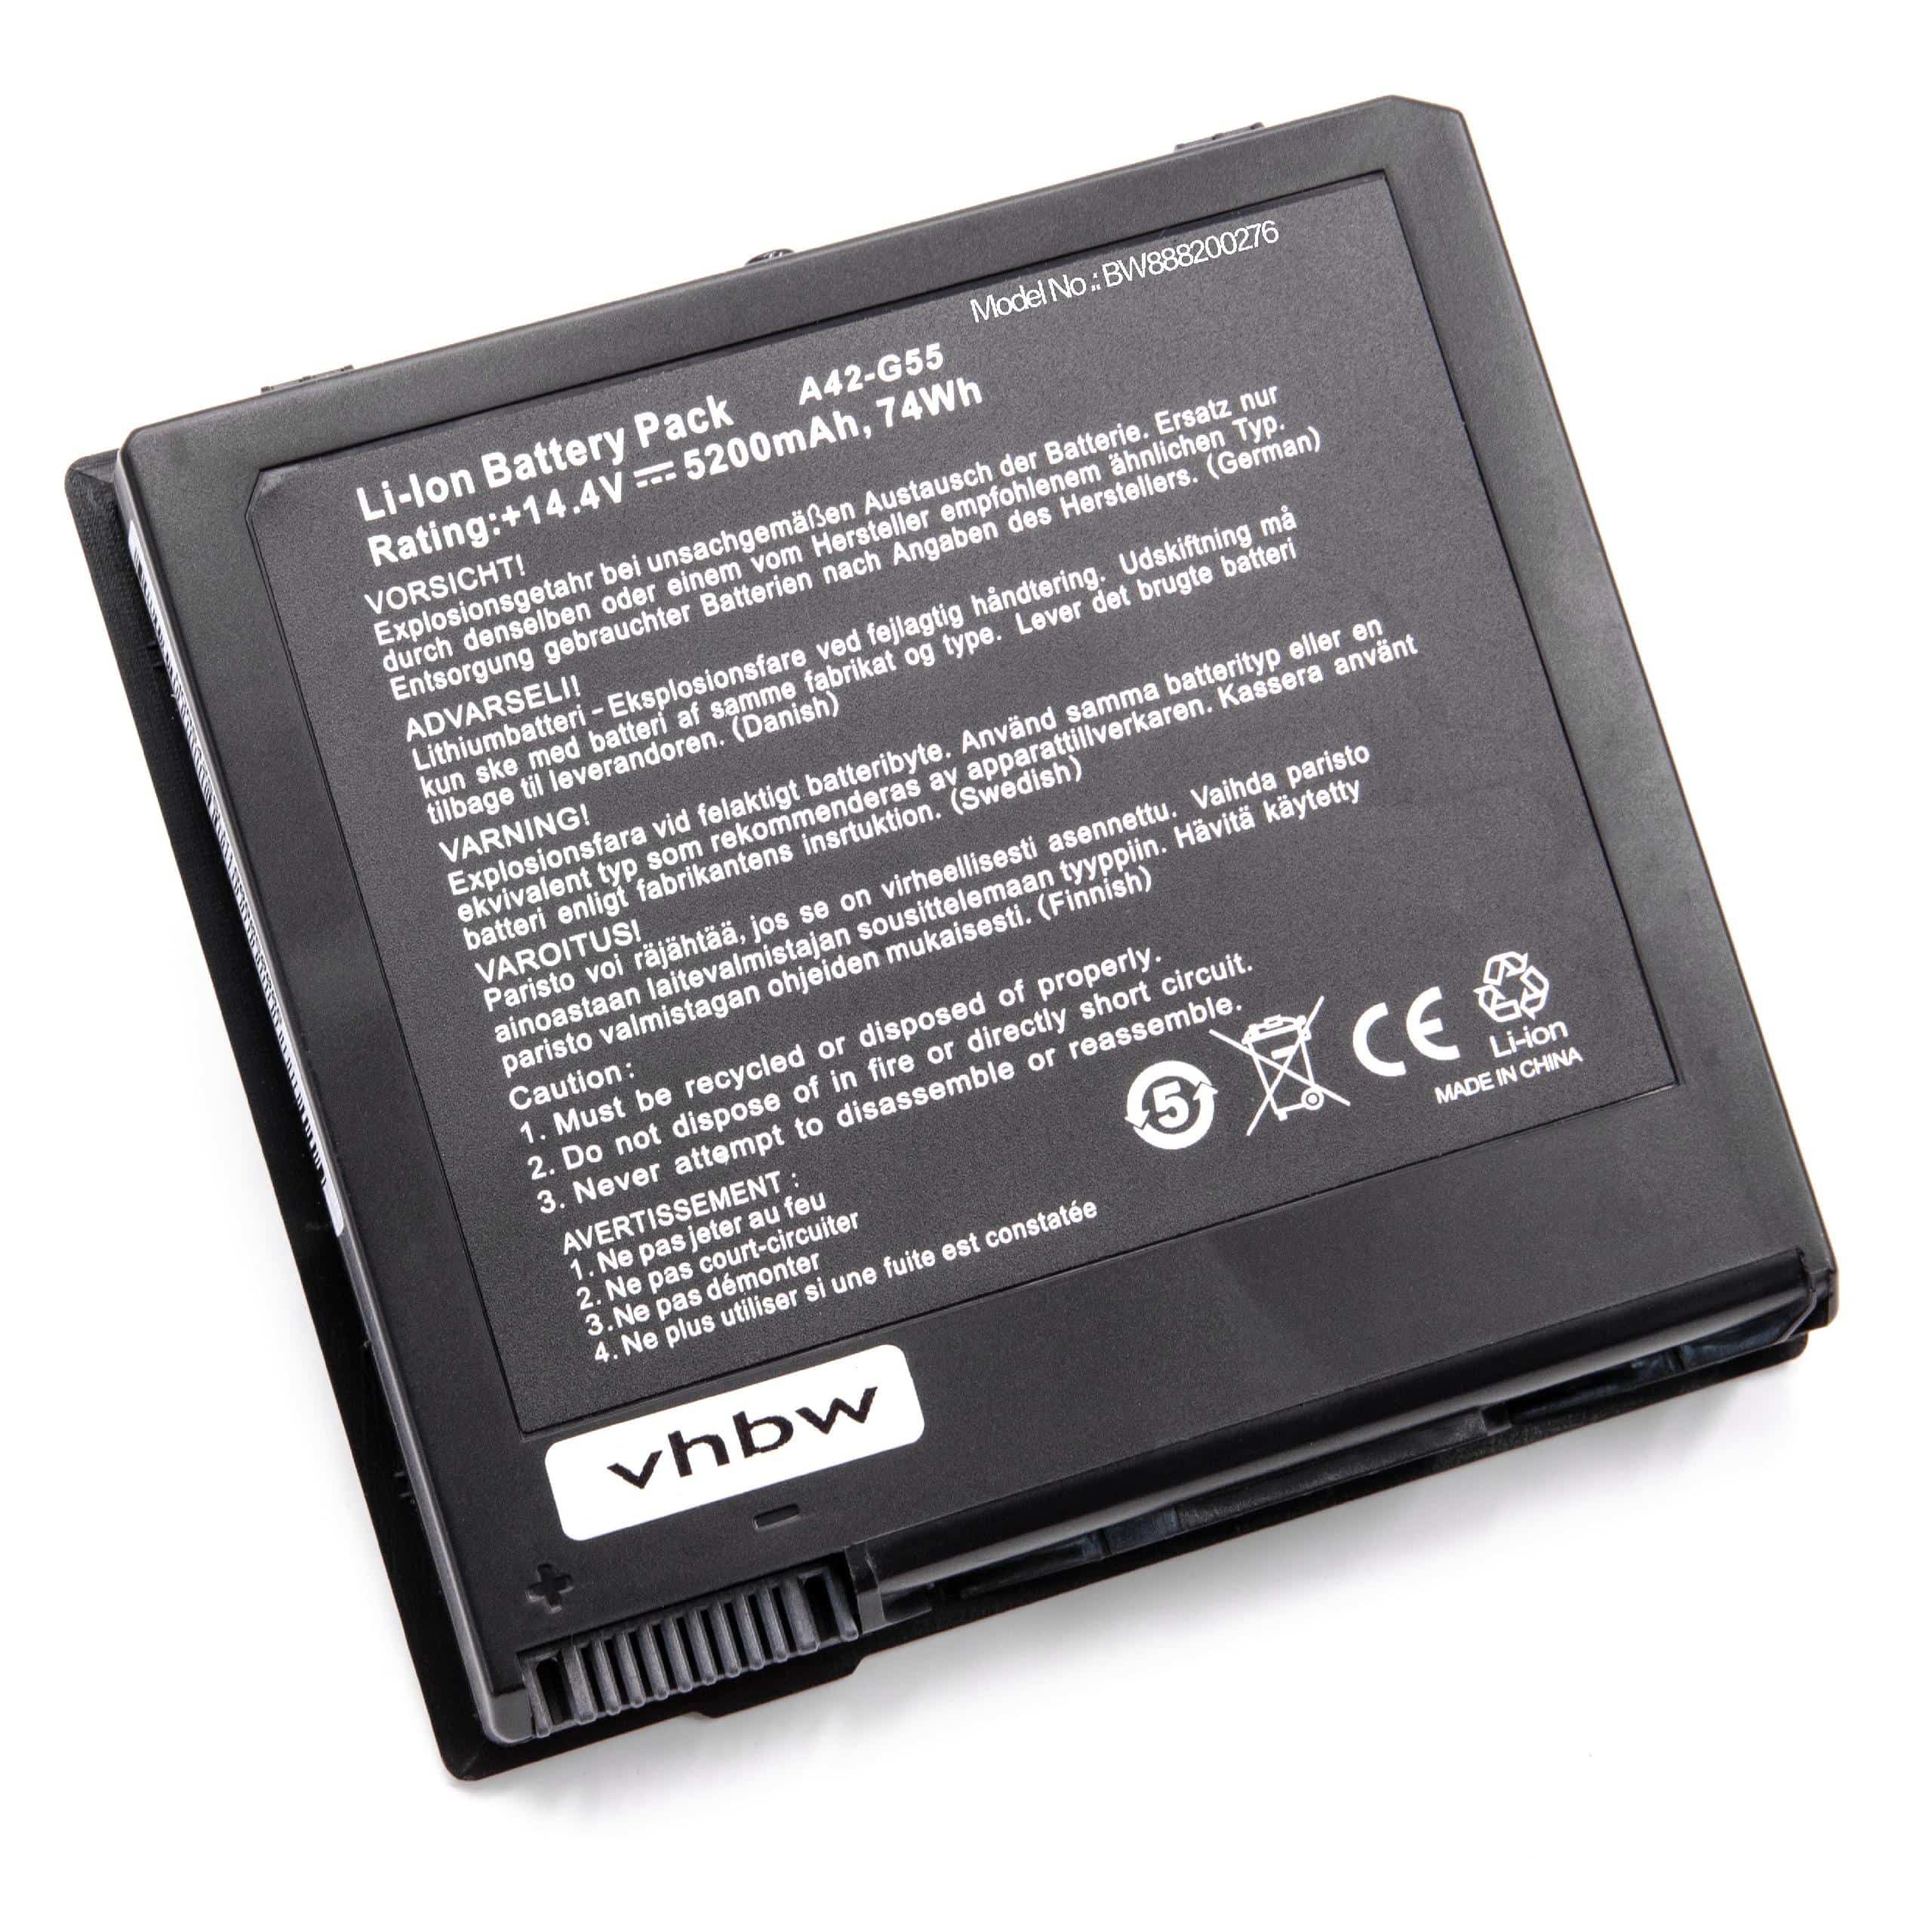 Batterie remplace Asus 0B110-00080000, A42-G55 pour ordinateur portable - 5200mAh 14,4V Li-ion, noir